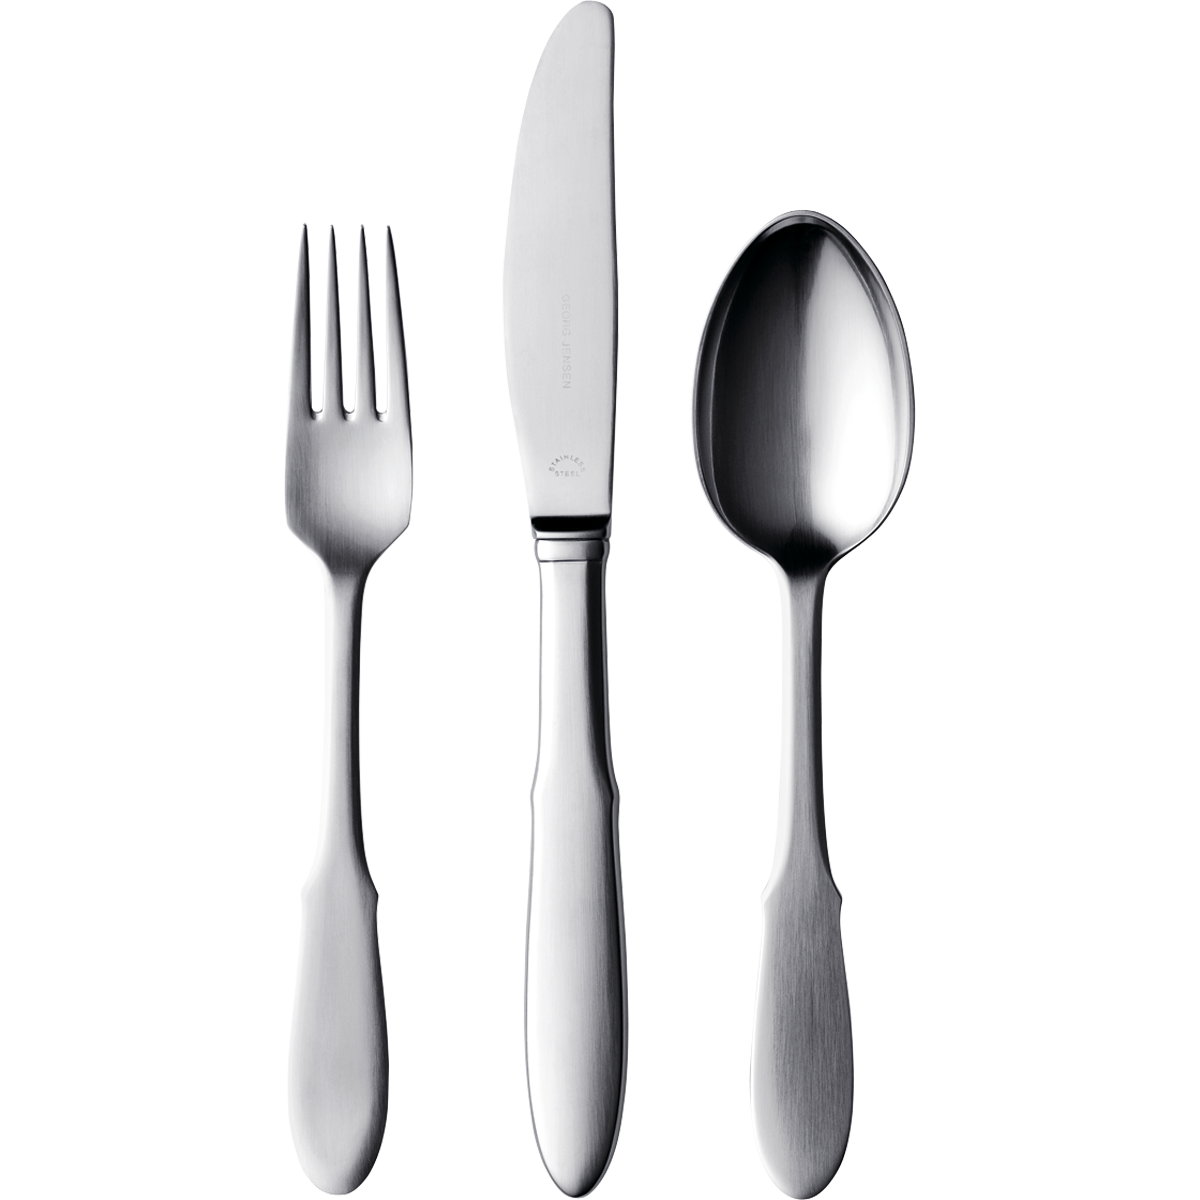 叉子、勺子和刀子